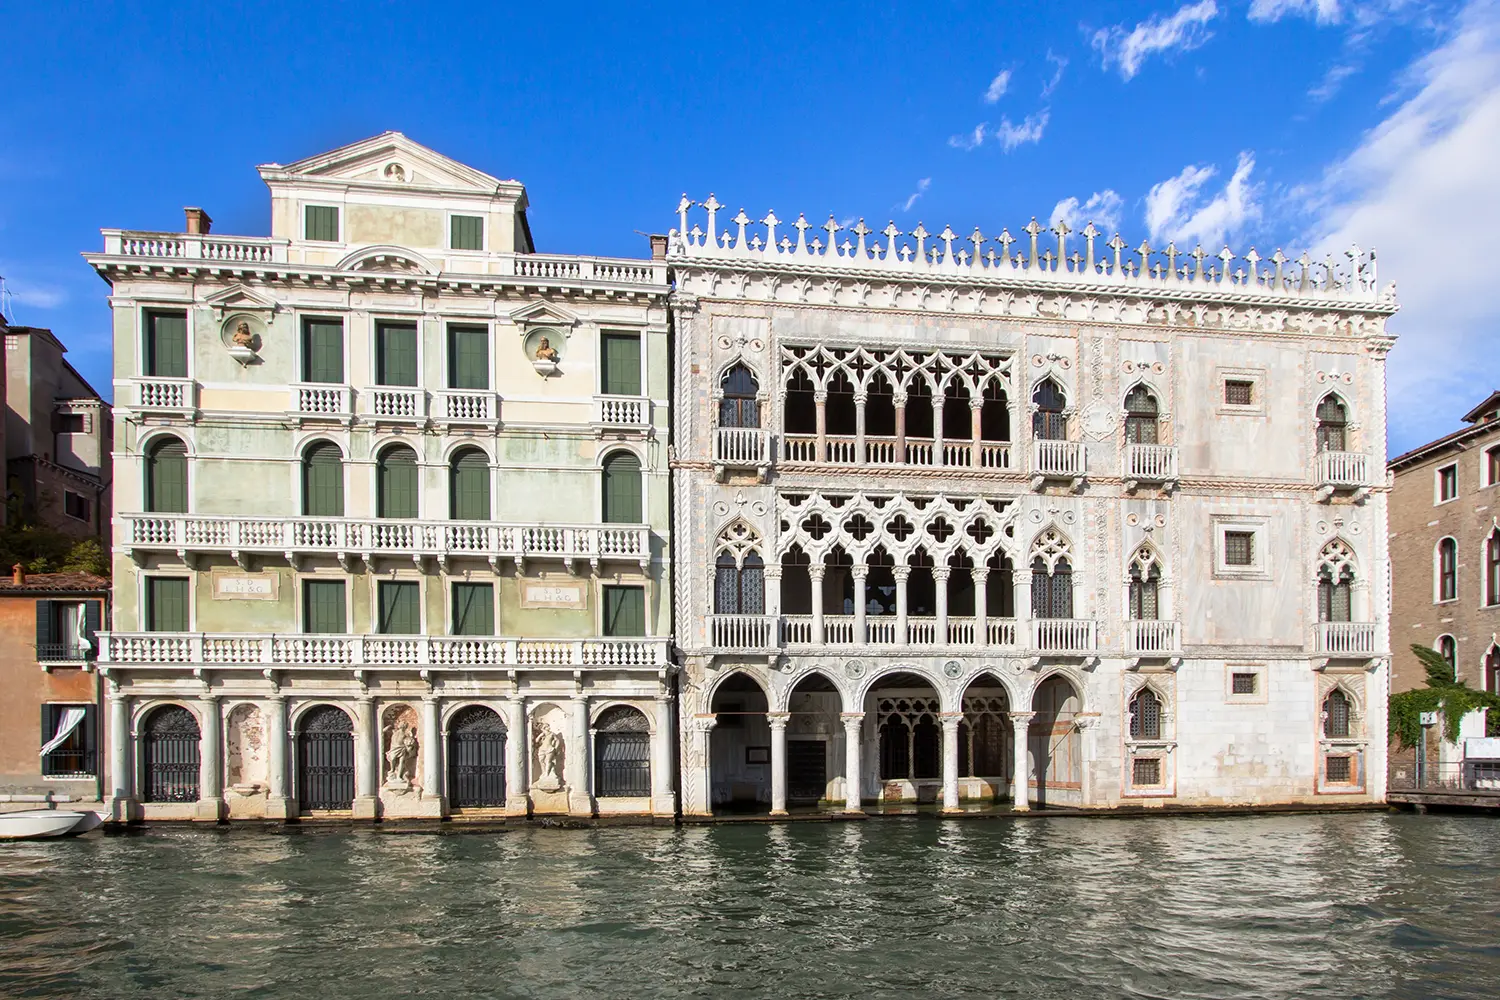 Palace Ca' d'Oro (Palazzo Santa Sofia) on Grand Canal in Venice, Italy